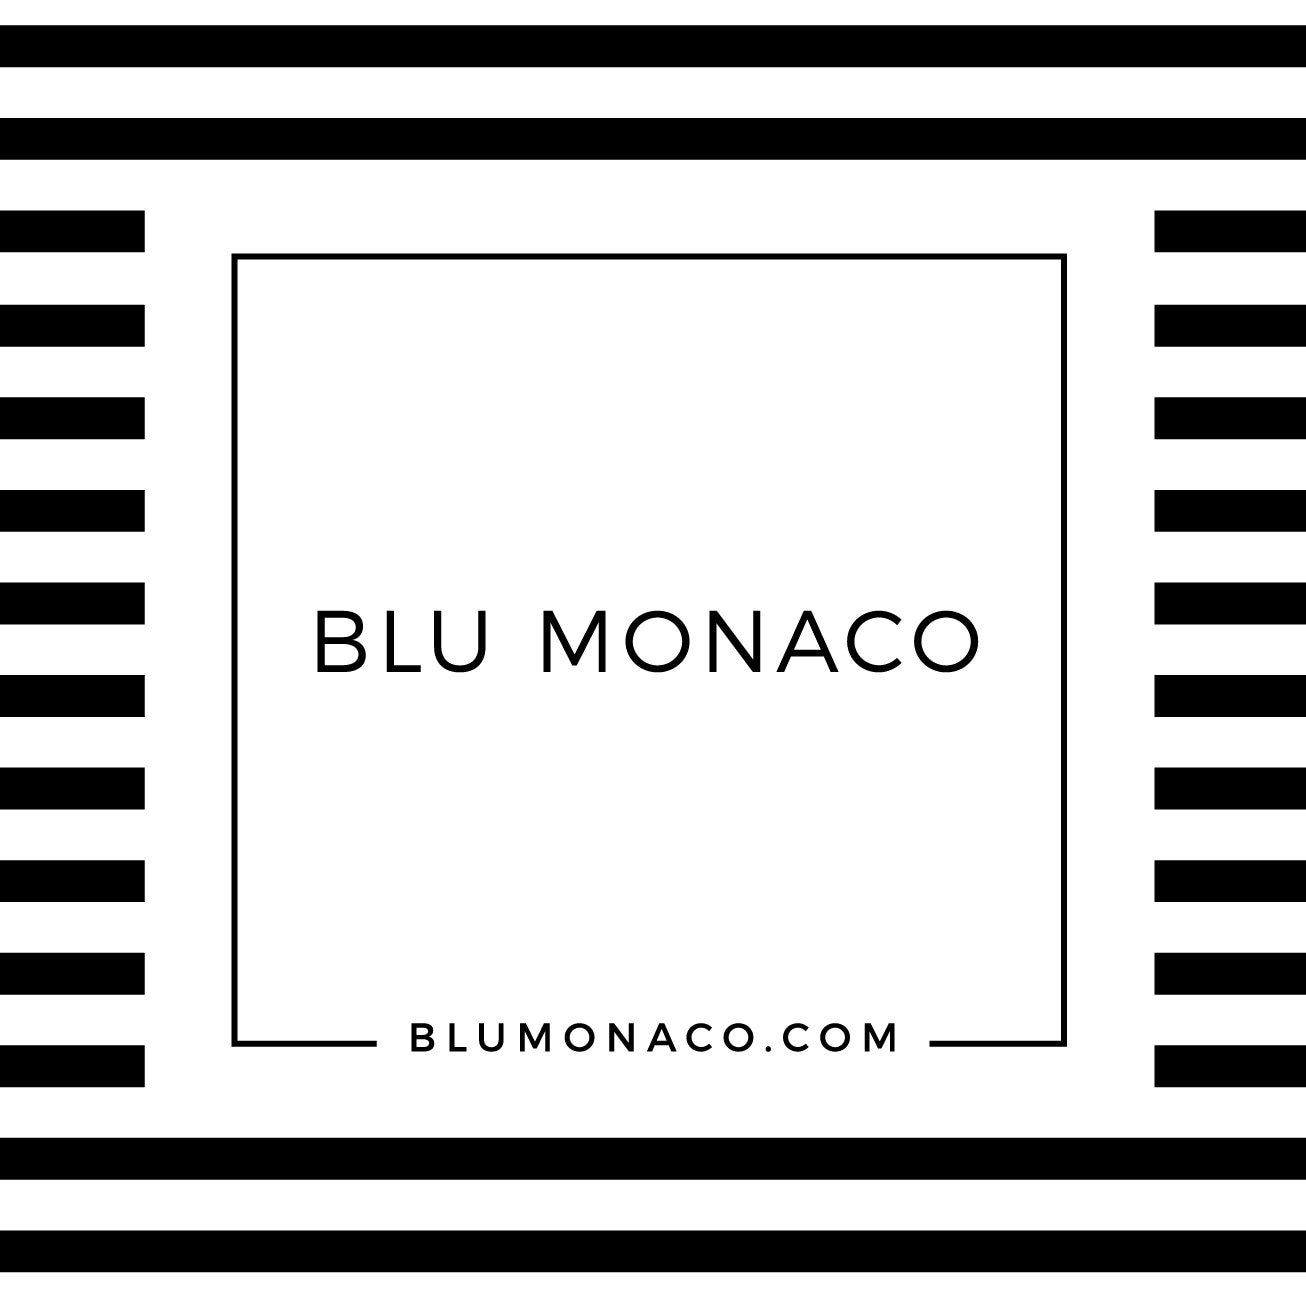 BLU MONACO White Wooden Office Supplies Organizer